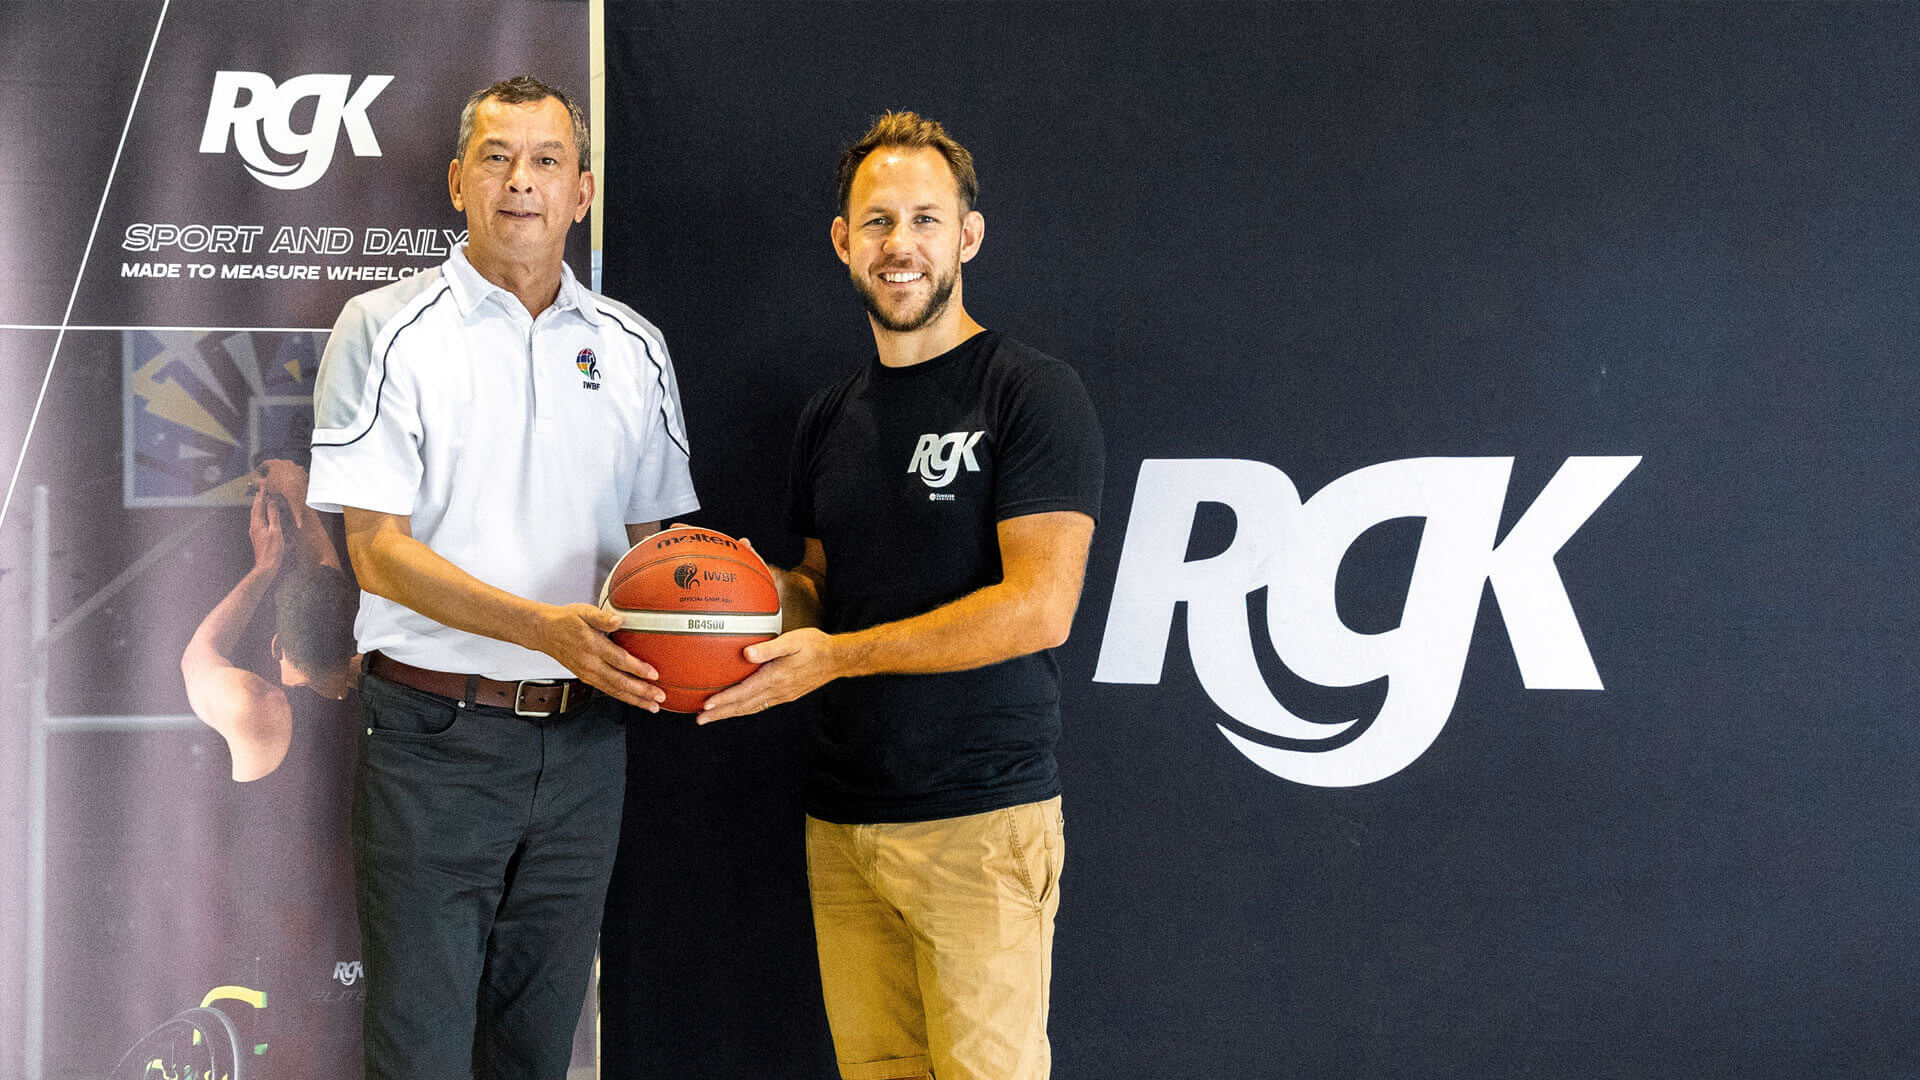 Internationale rolstoelbasketbal-federatie kondigt opwindende samenwerking aan met RGK Wheelchairs